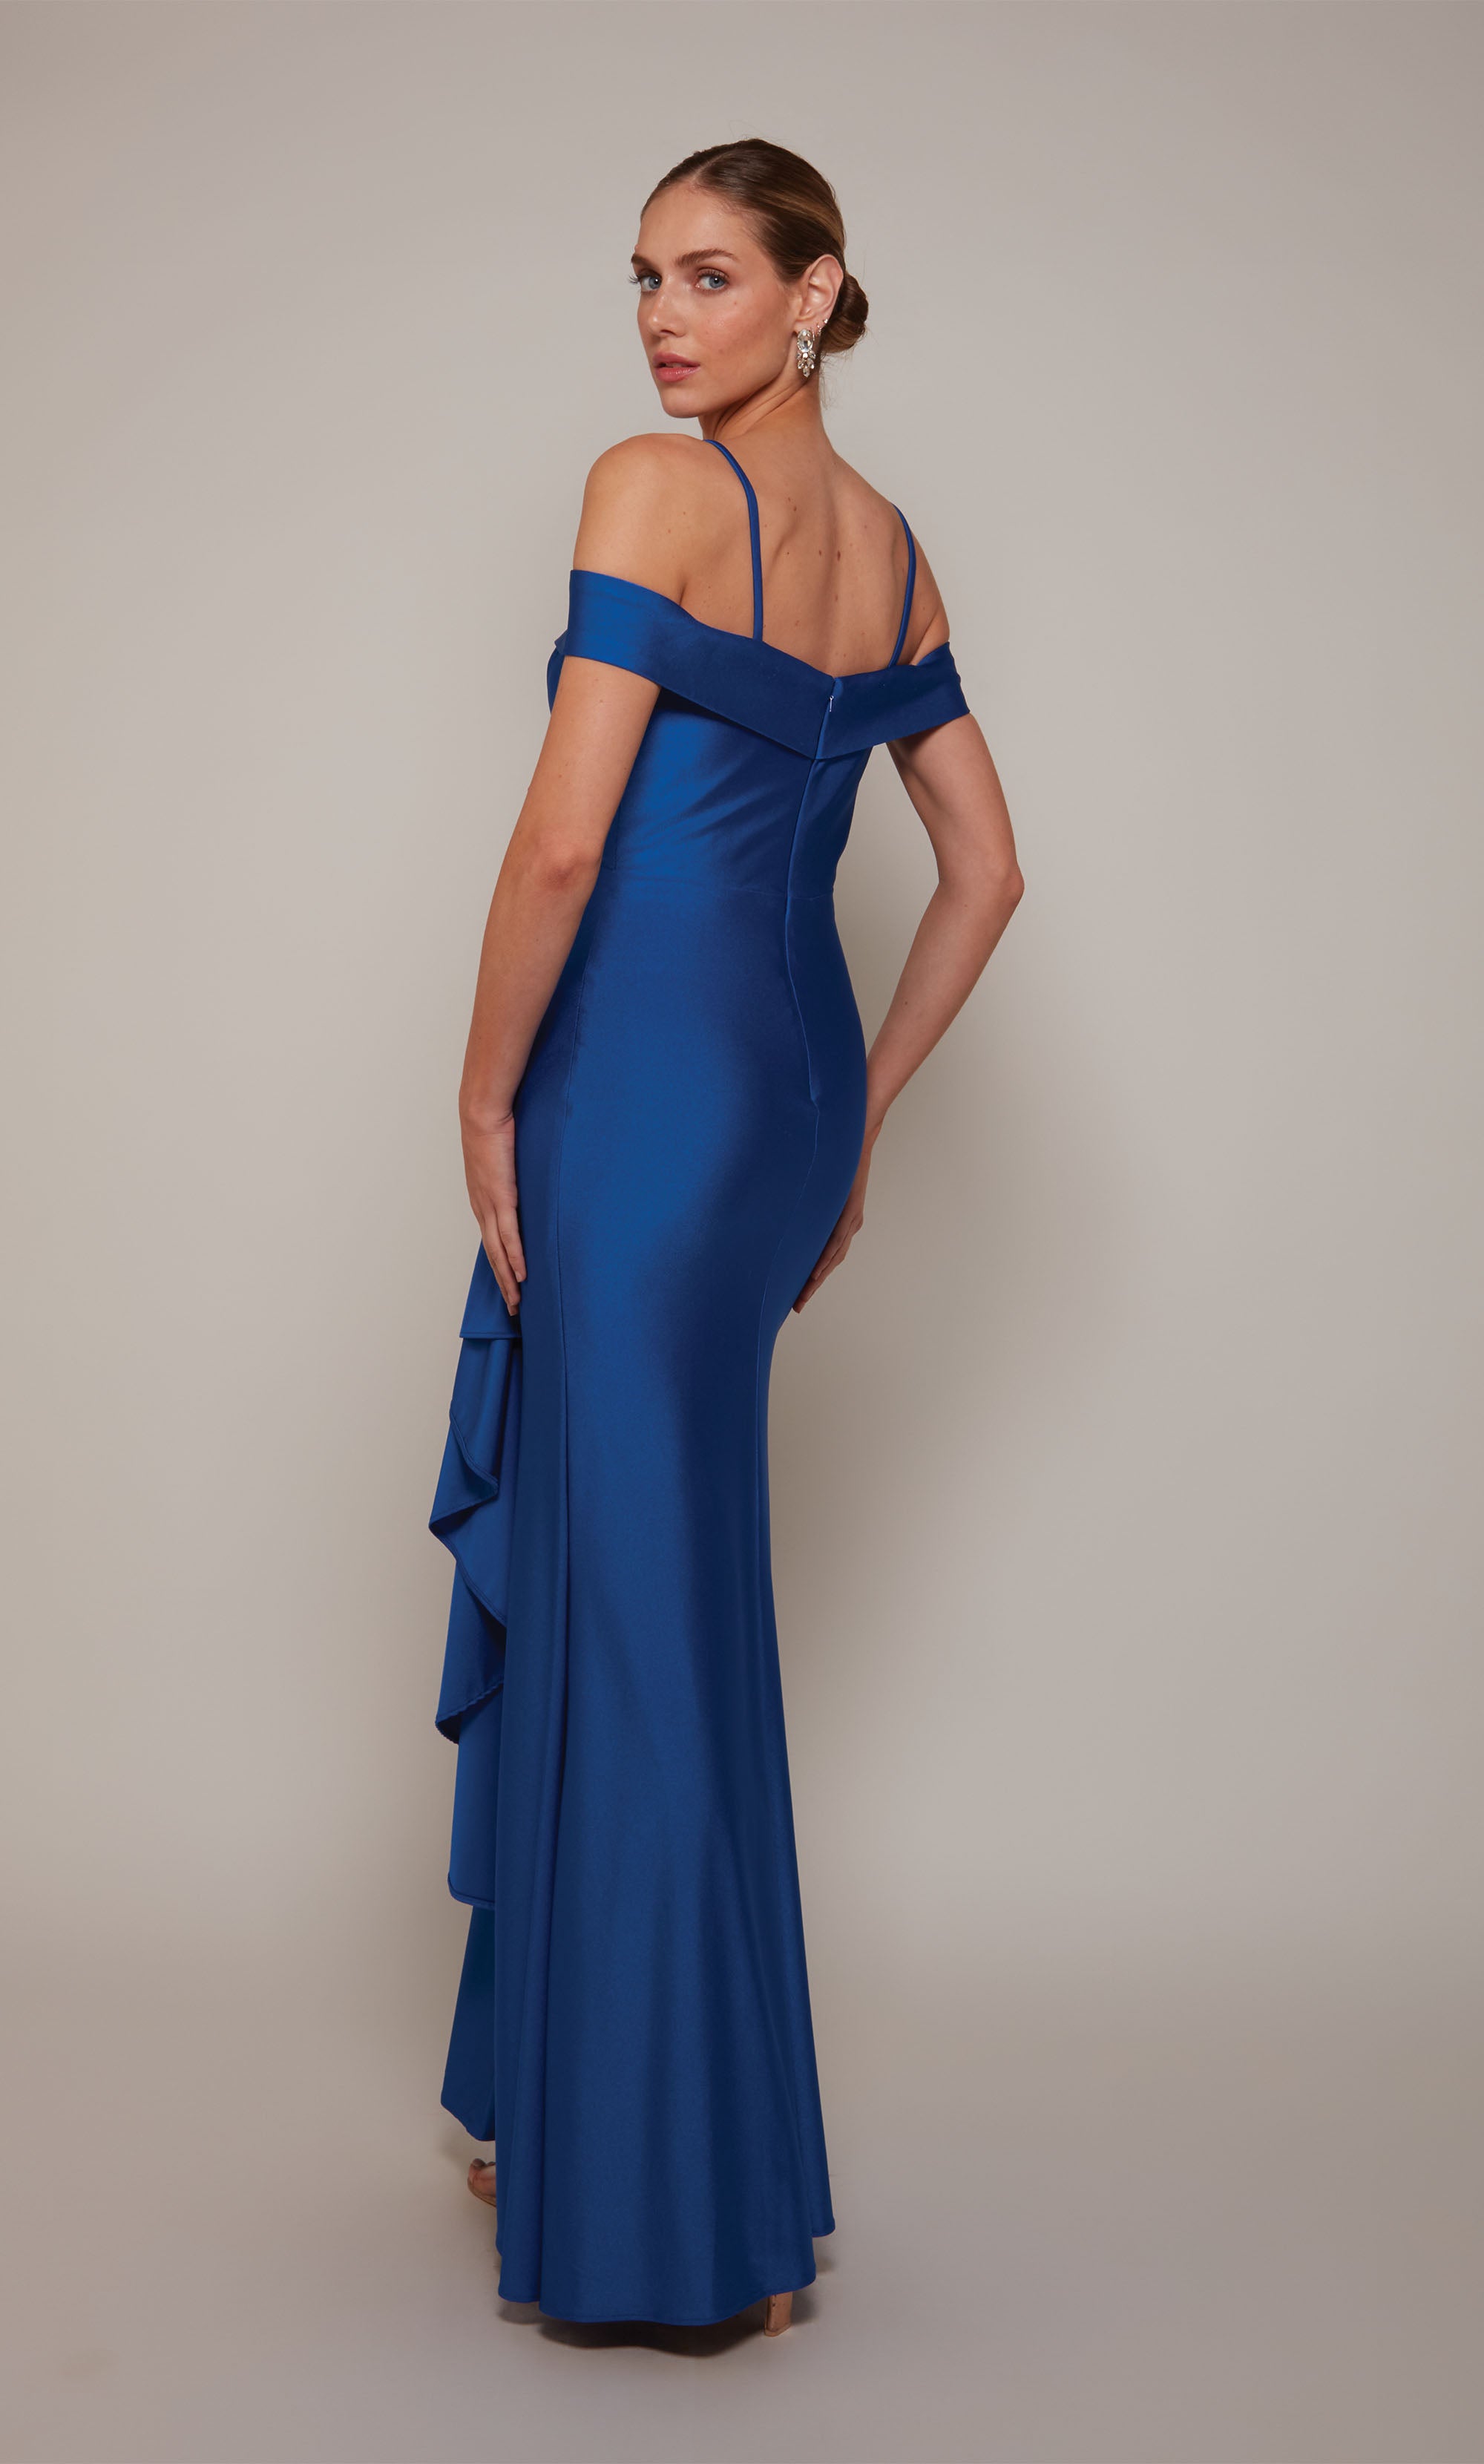 Evening Gowns Work Maxi Dress Elegant Ruffle Dress Shoulder Dress